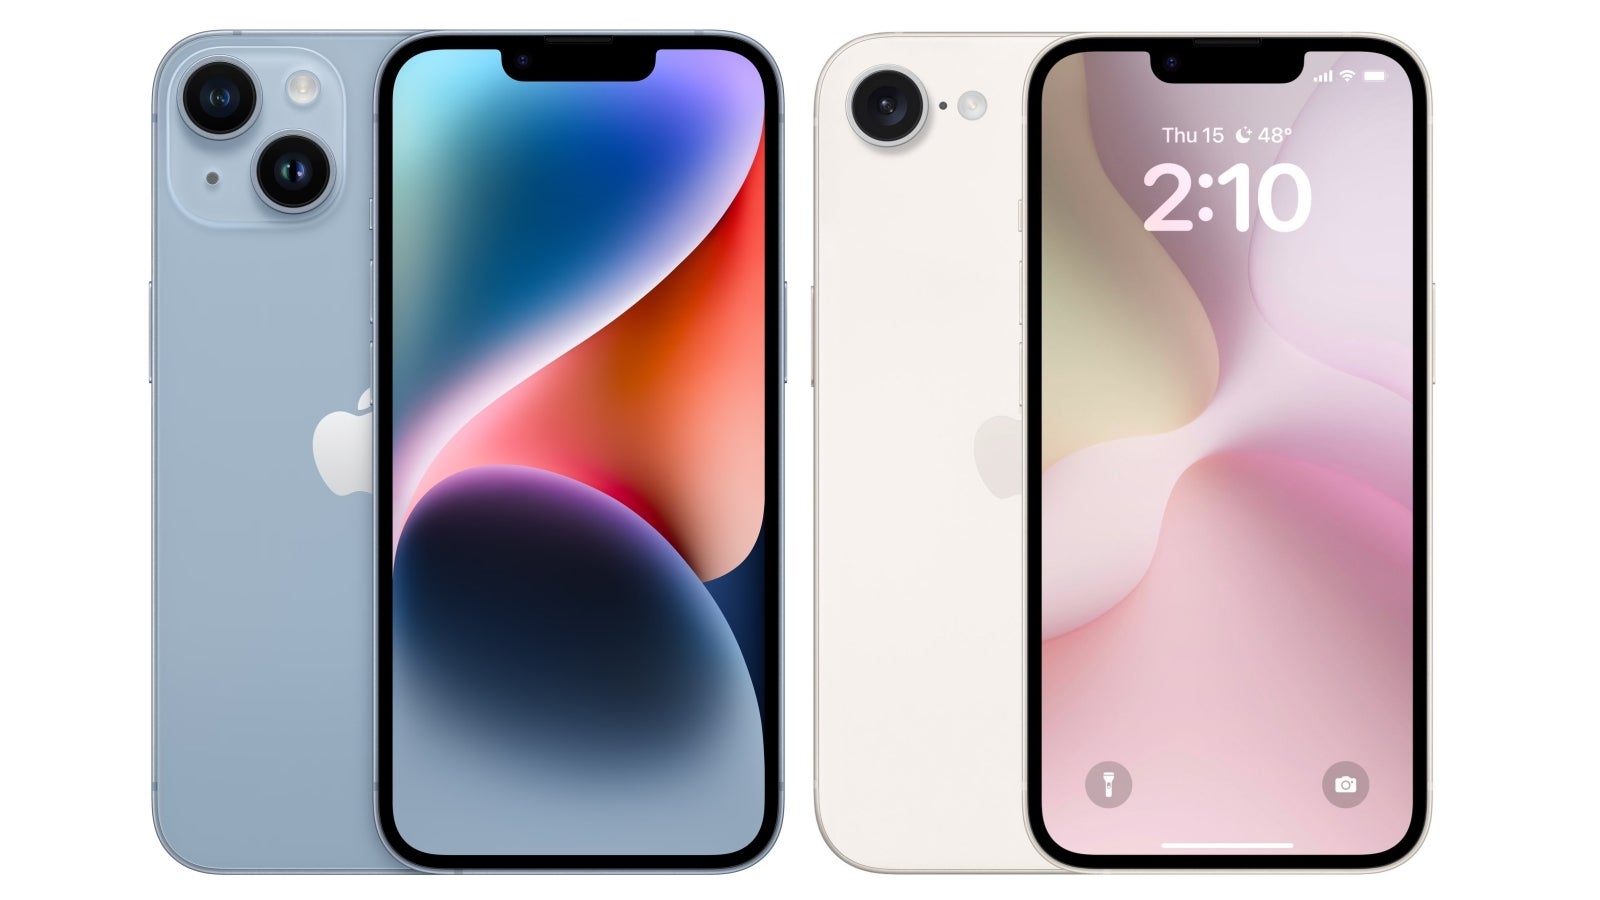 iPhone 14 (solda) iddia edilen iPhone SE 4'ün görselinin yanında. Tek fark arka kamera sayısında.  - iPhone SE 4: Apple'ın en 